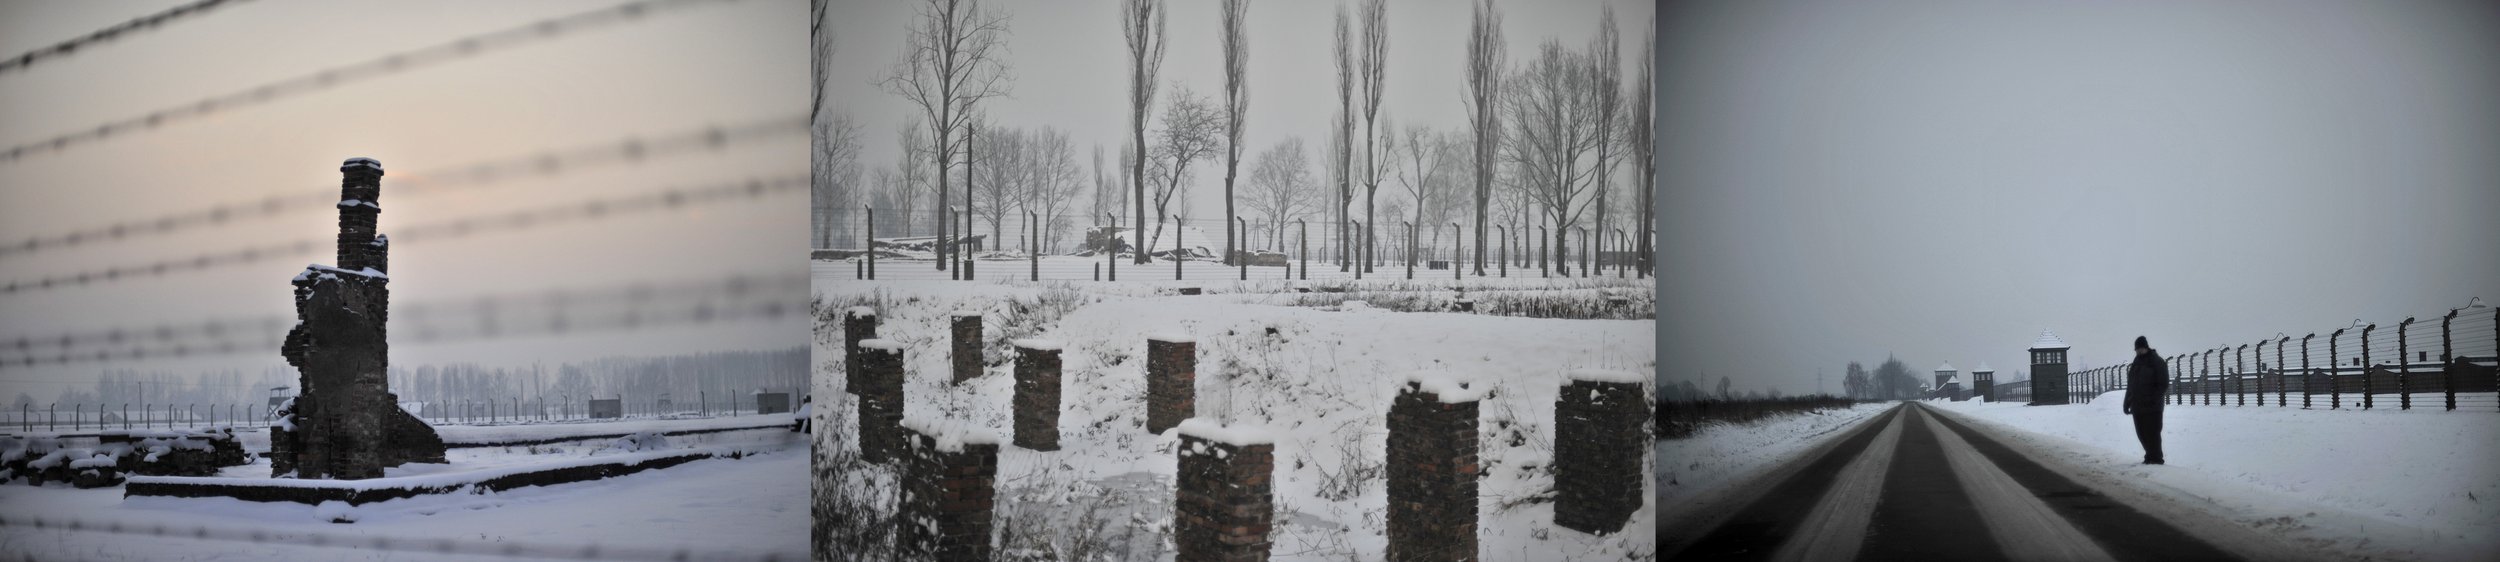 Auschwitz_Montage_02.jpg